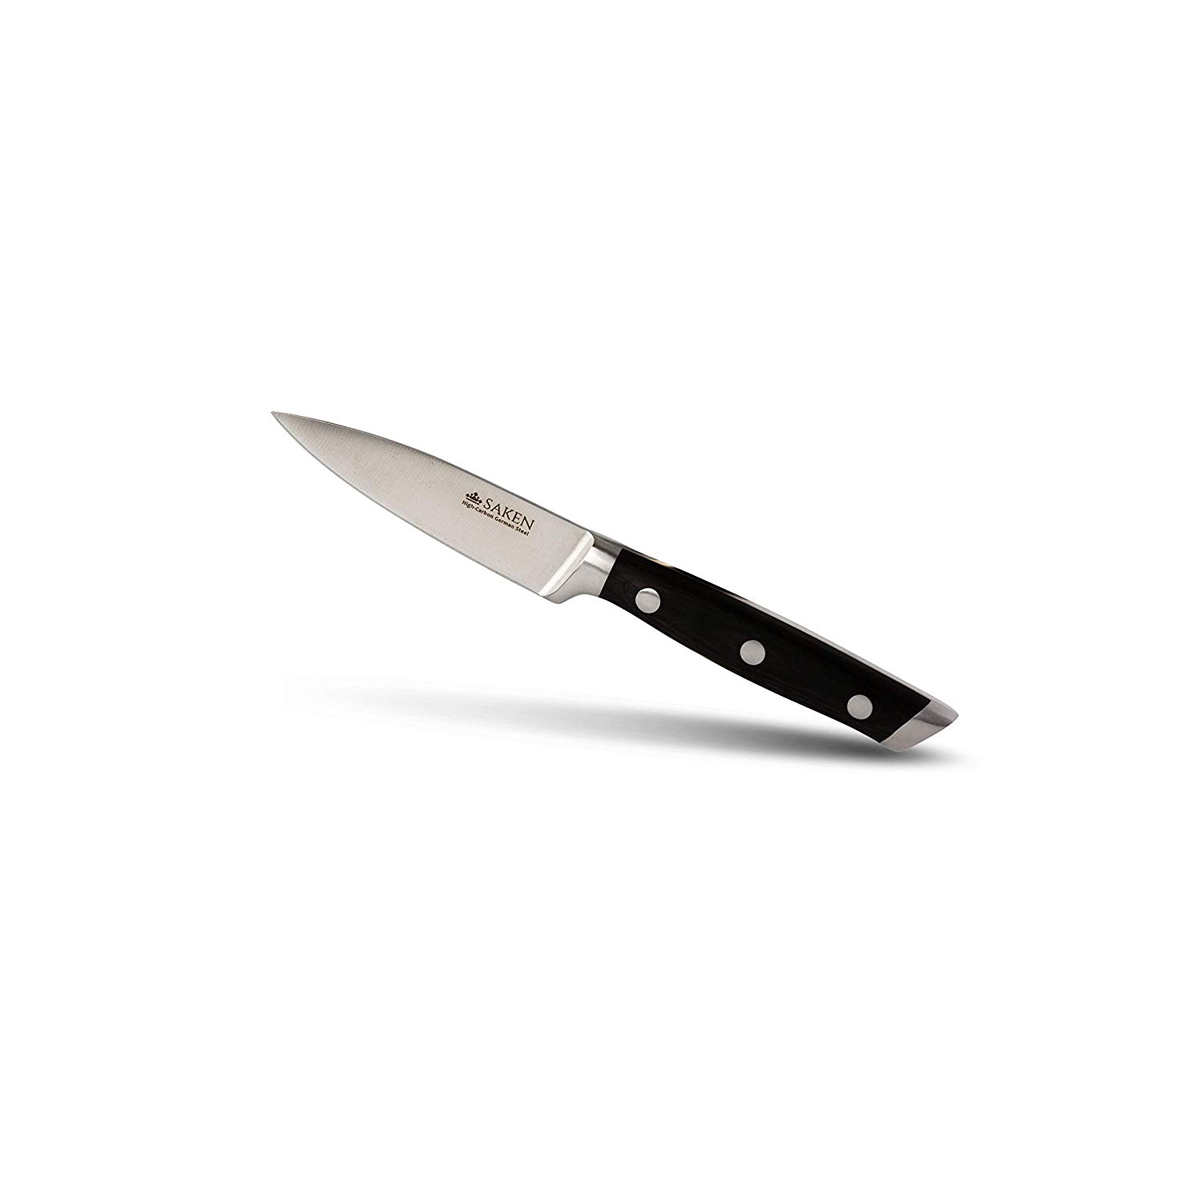 Saken 3.5 Inch High Carbon German Steel Paring Knife image 3